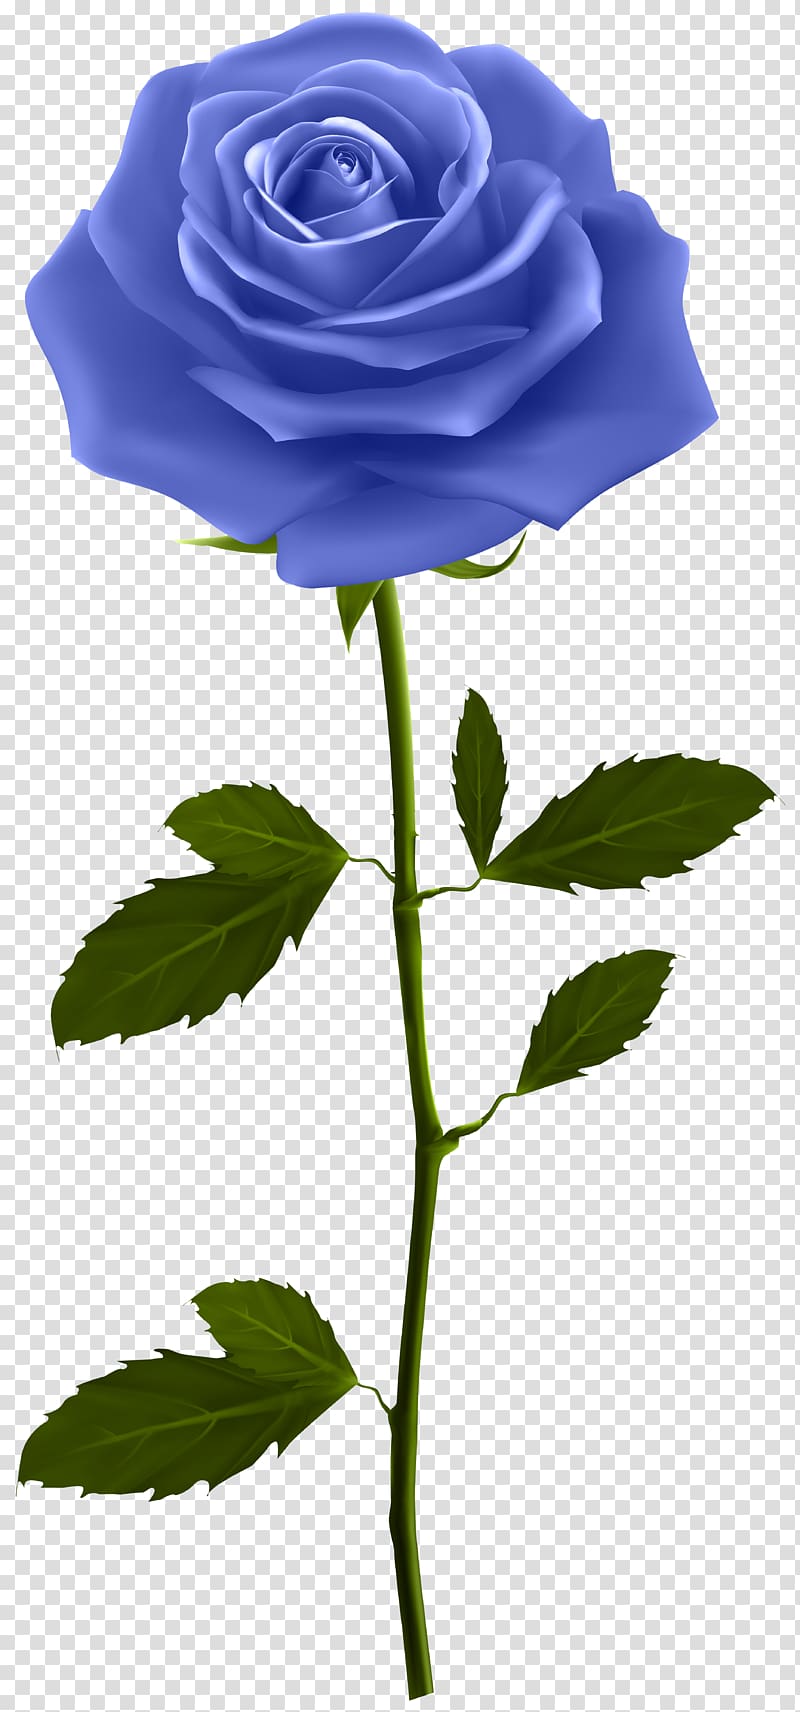 blue rose illustration, Rose Flower , Blue Rose with Stem transparent background PNG clipart